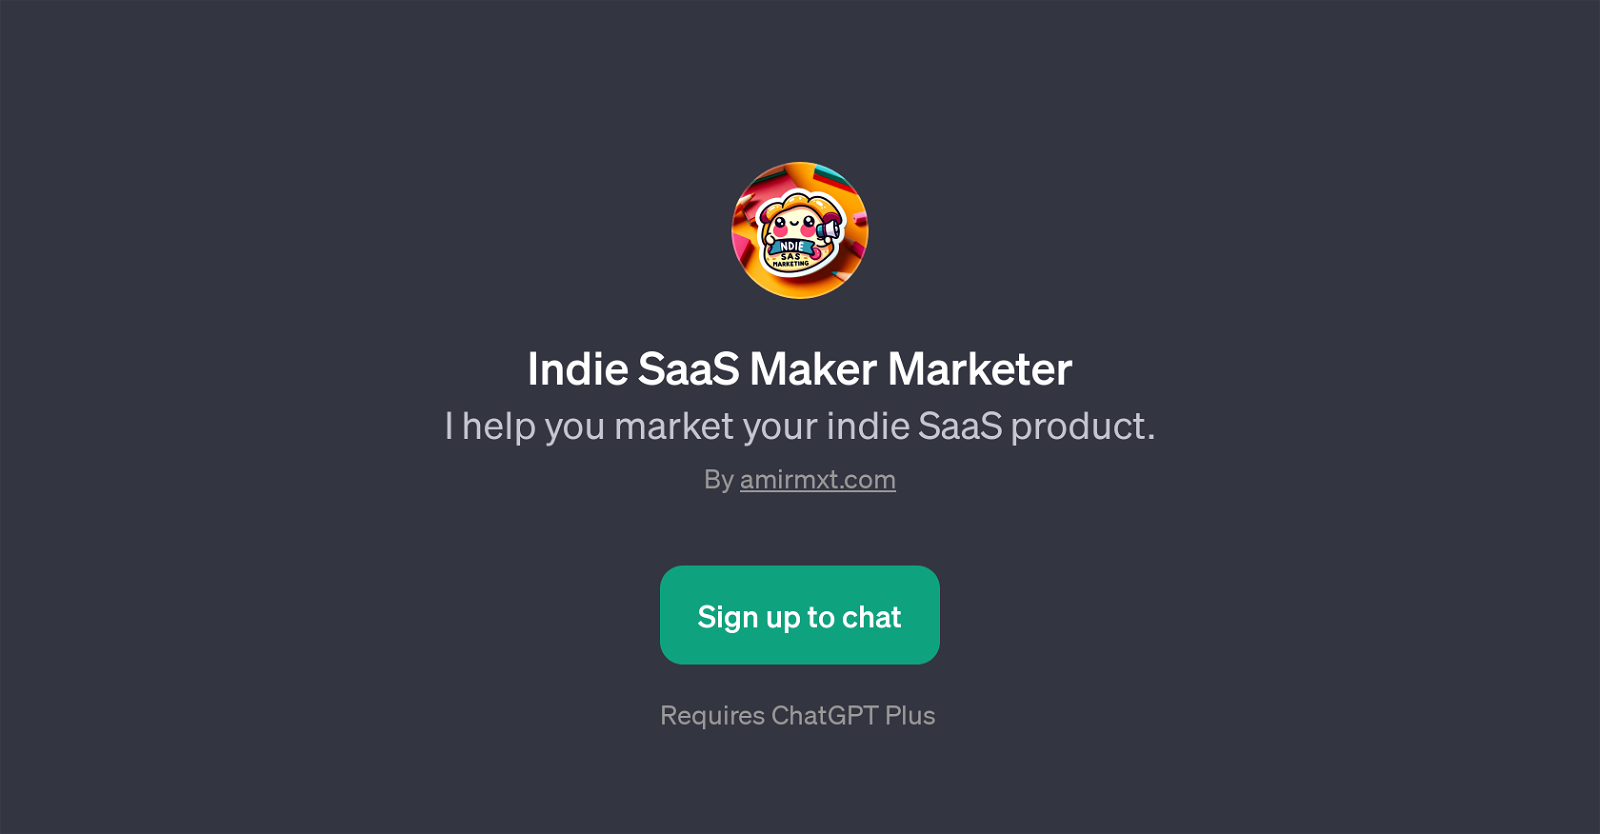 Indie SaaS Maker Marketer website